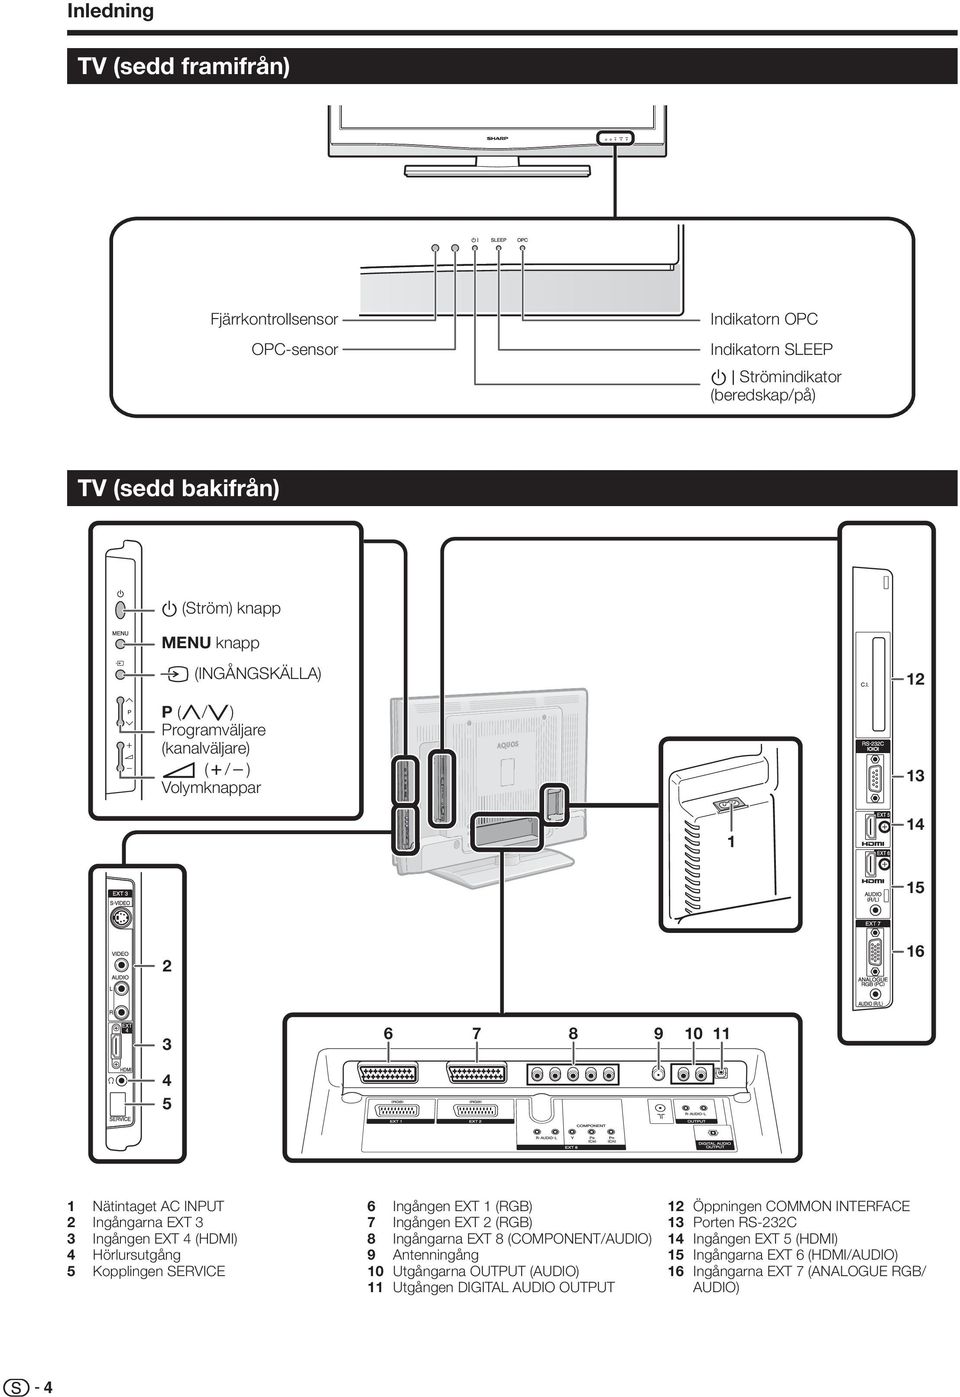 (HDMI) 4 Hörlursutgång 5 Kopplingen SERVICE 6 Ingången EXT (RGB) 7 Ingången EXT (RGB) 8 Ingångarna EXT 8 (COMPONENT/AUDIO) 9 Antenningång 0 Utgångarna OUTPUT